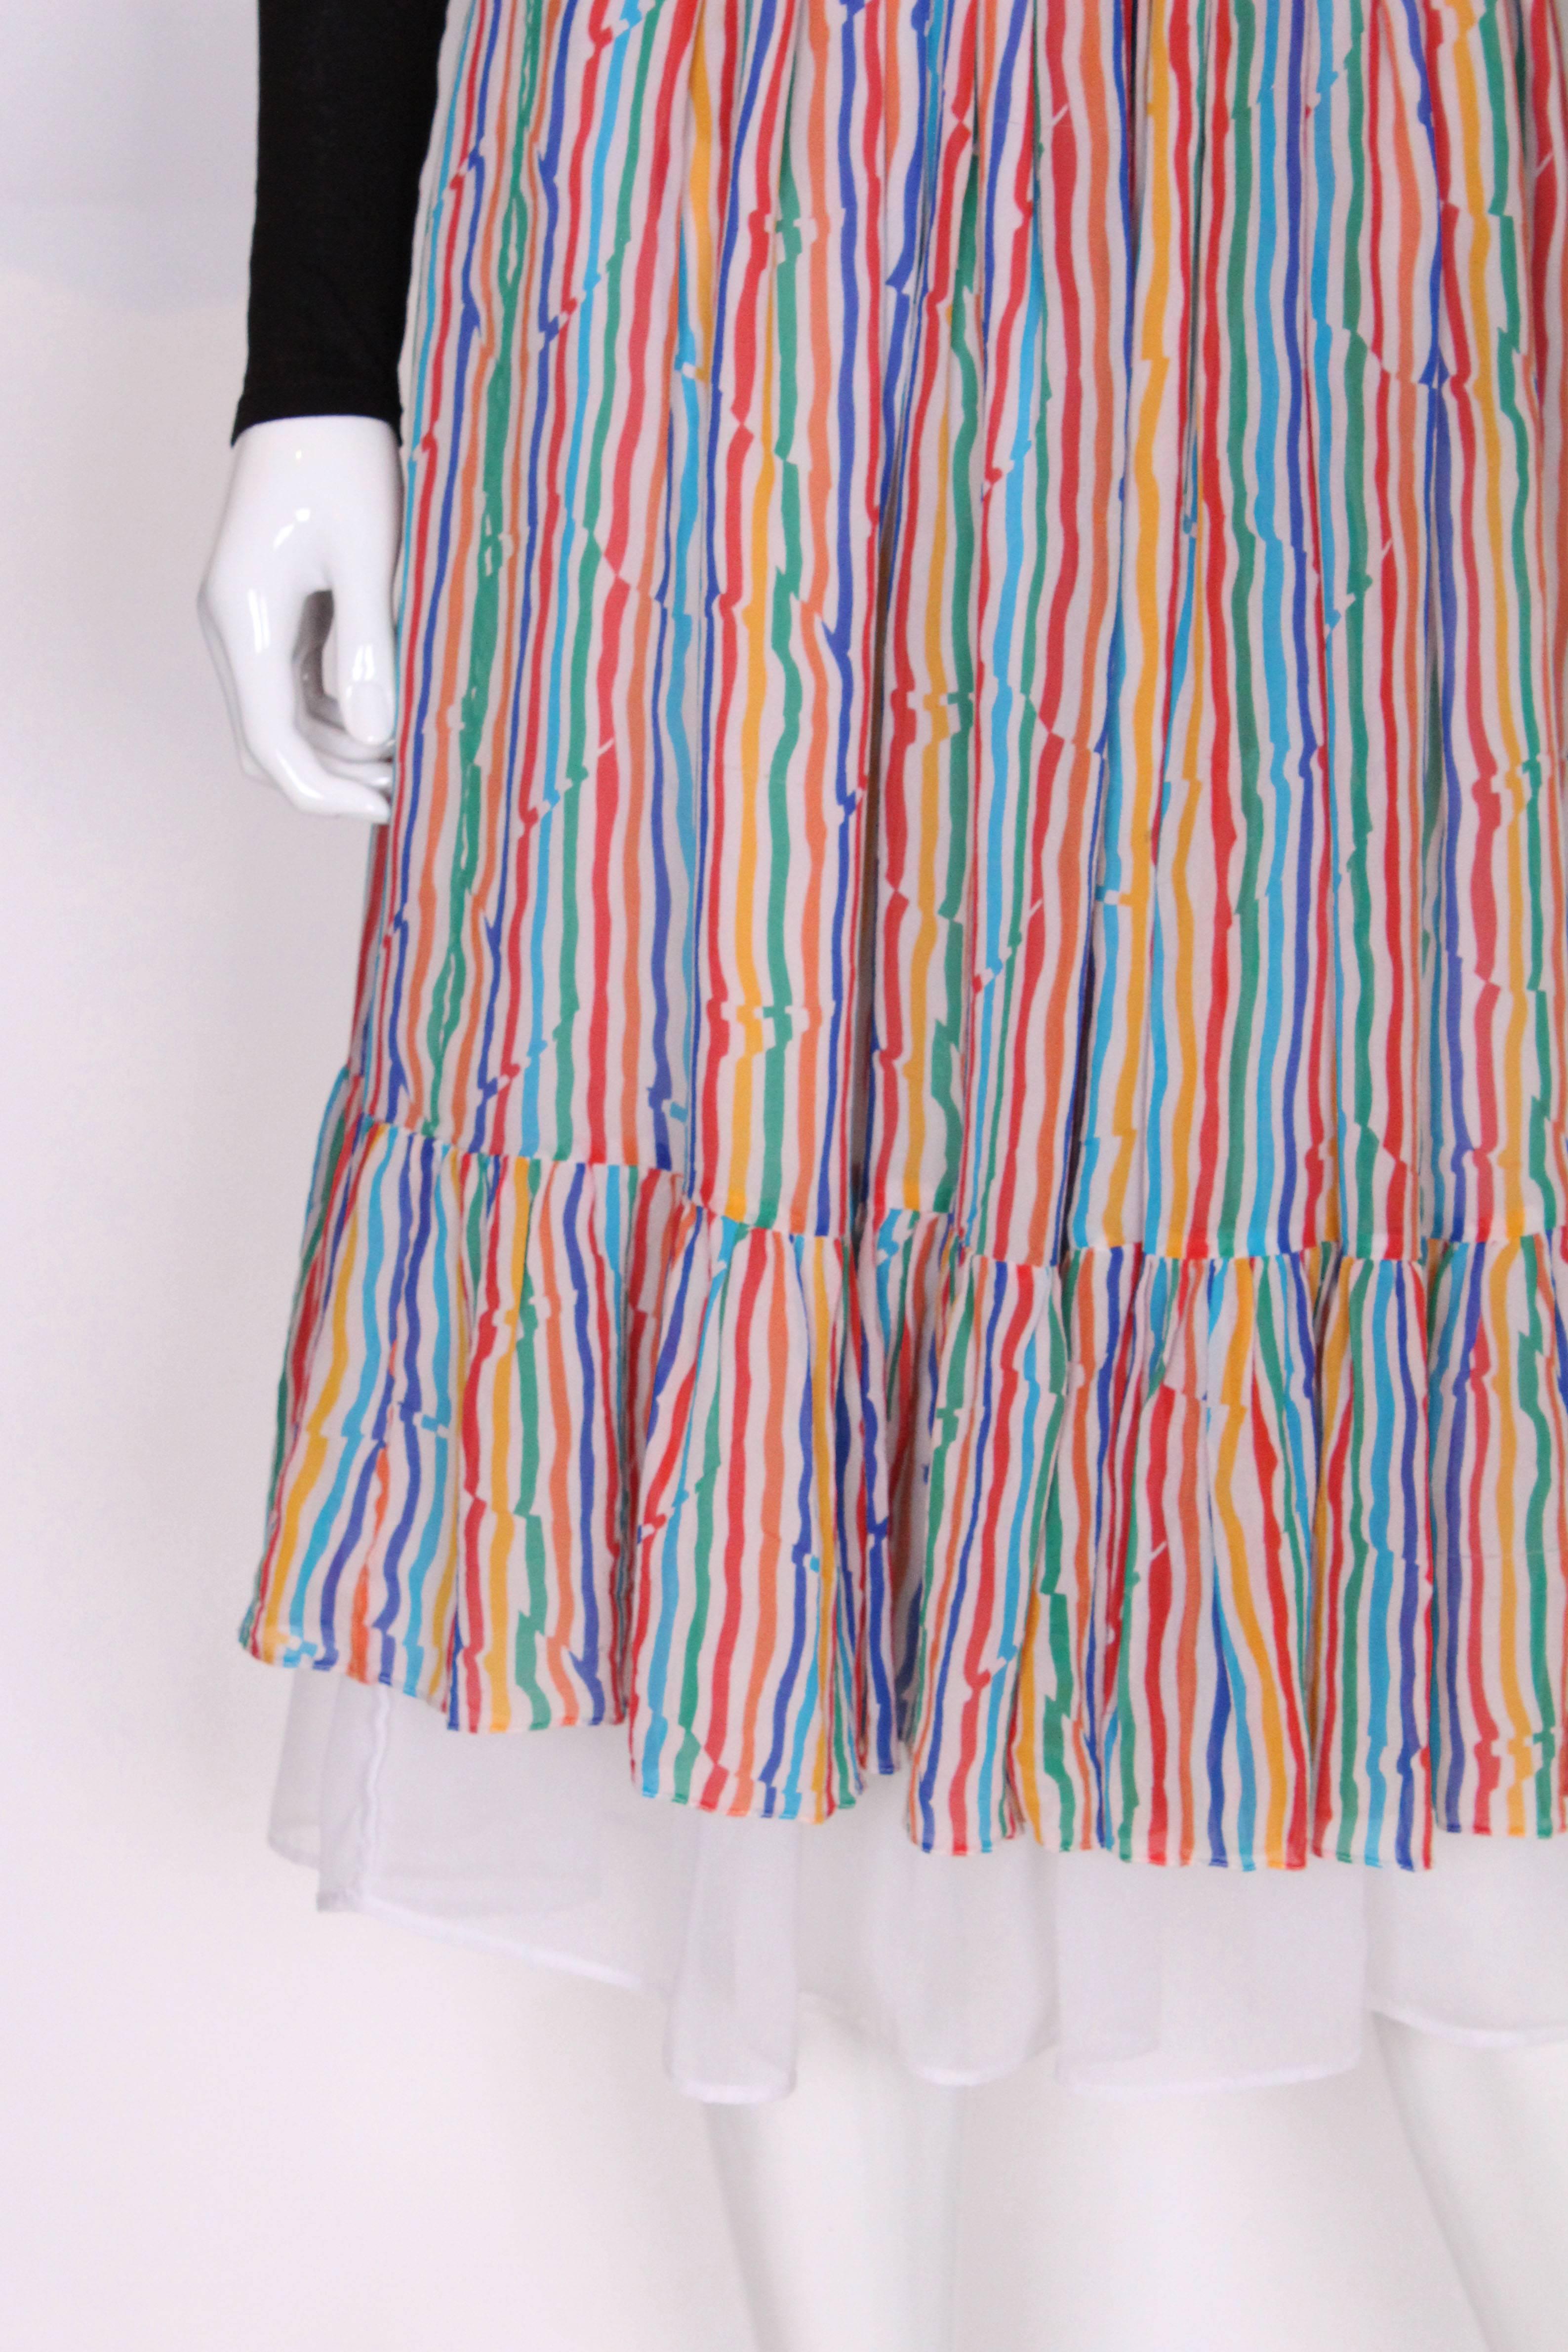 Caroline Charles Stripe Silk Multi Coloured Skirt For Sale 1